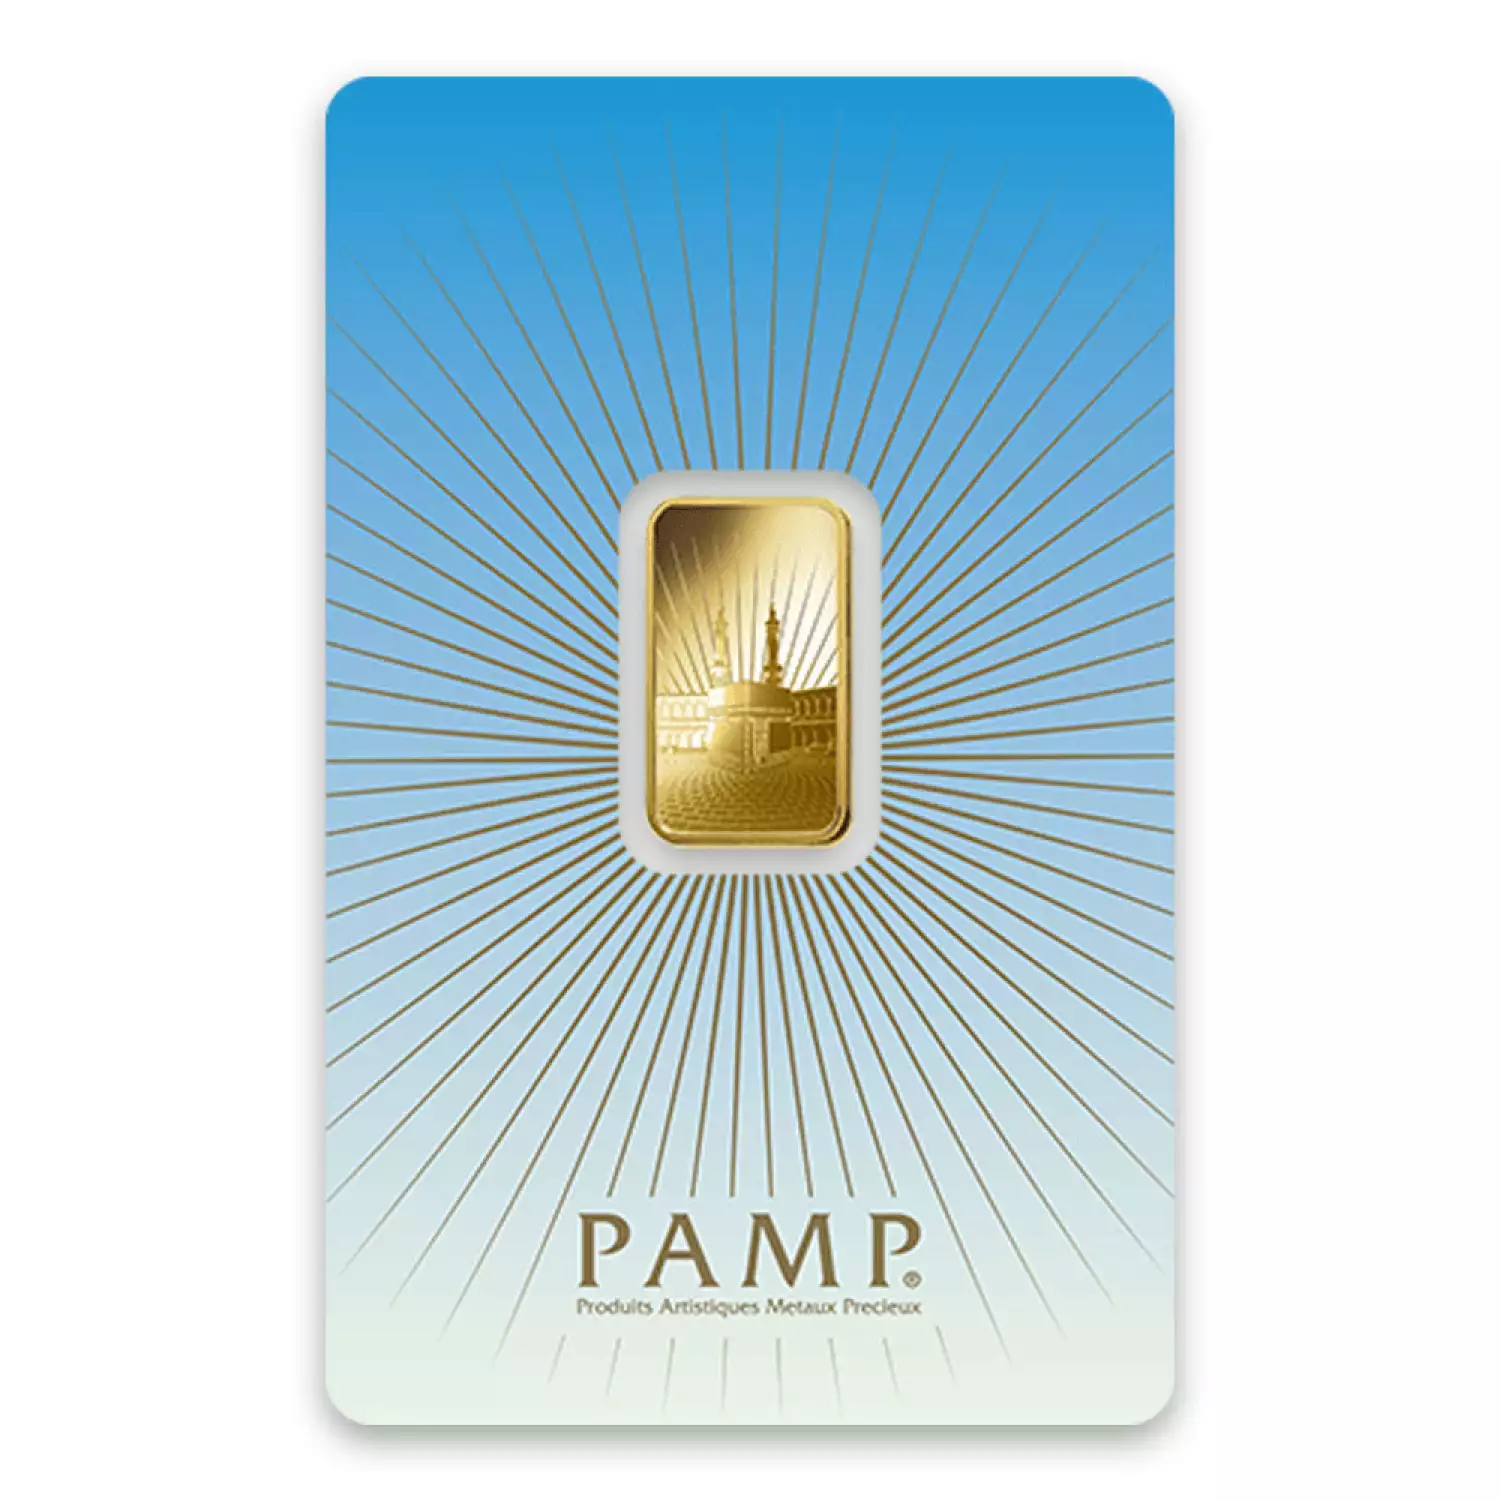 5g PAMP Gold Bar - Ka `Bah. Mecca (3)